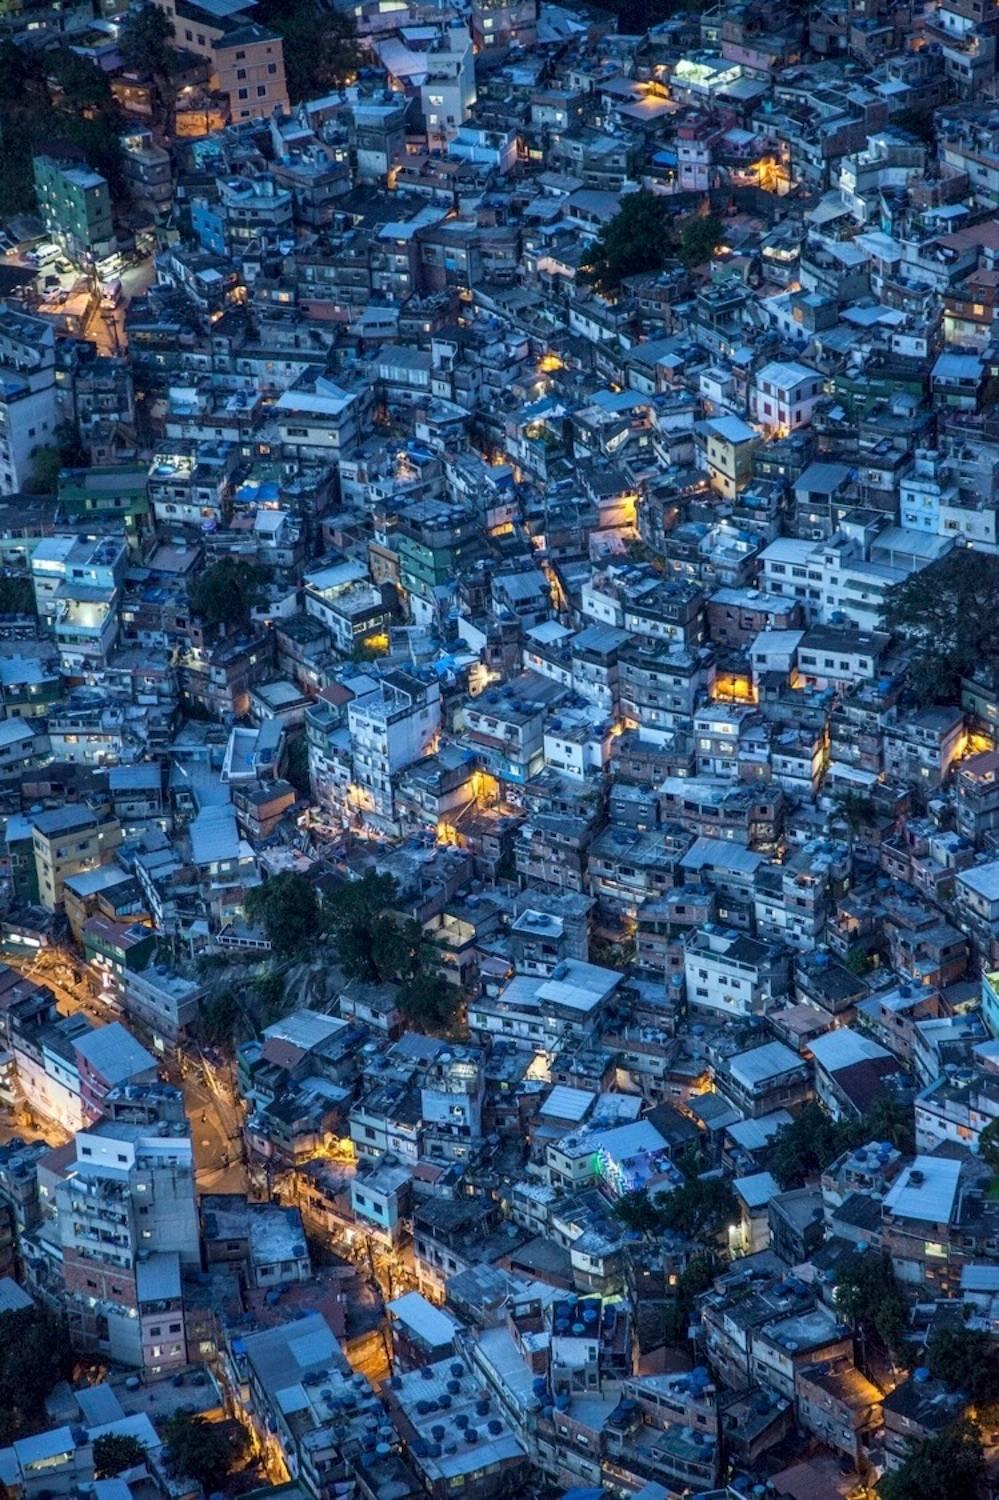 Oceano - Favelas. Rio De Janeiro. Brazil. 